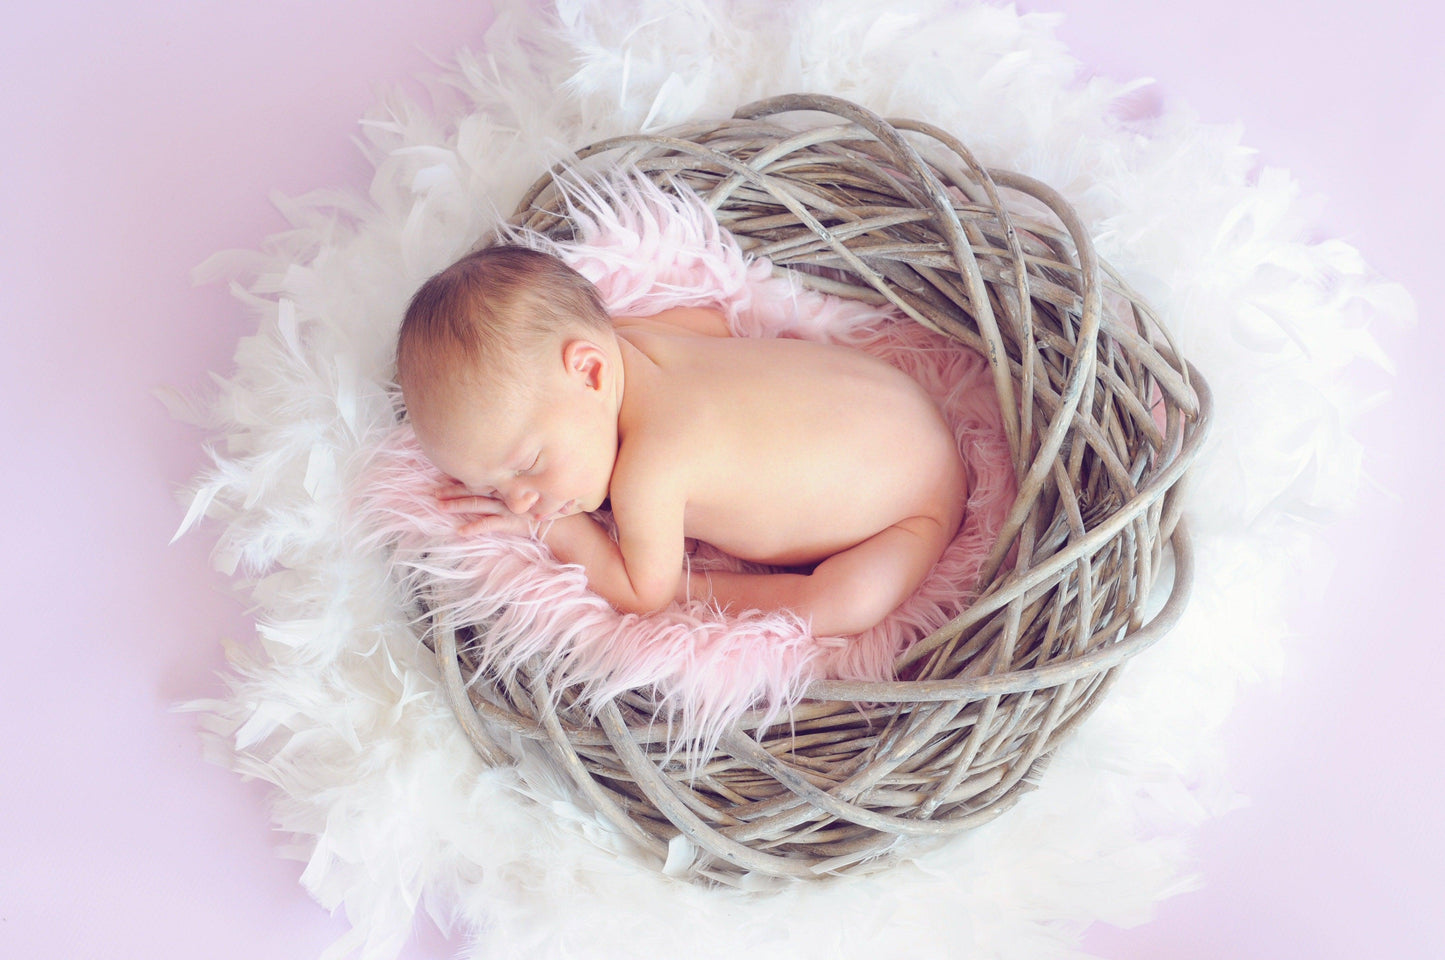 Un nouveau-né paisible dort dans un nid tressé entouré de plumes douces et blanches et de délicats accessoires pour bébé sur fond rose pastel avec la Carte Cadeaux Naissance BABY-PREMA.